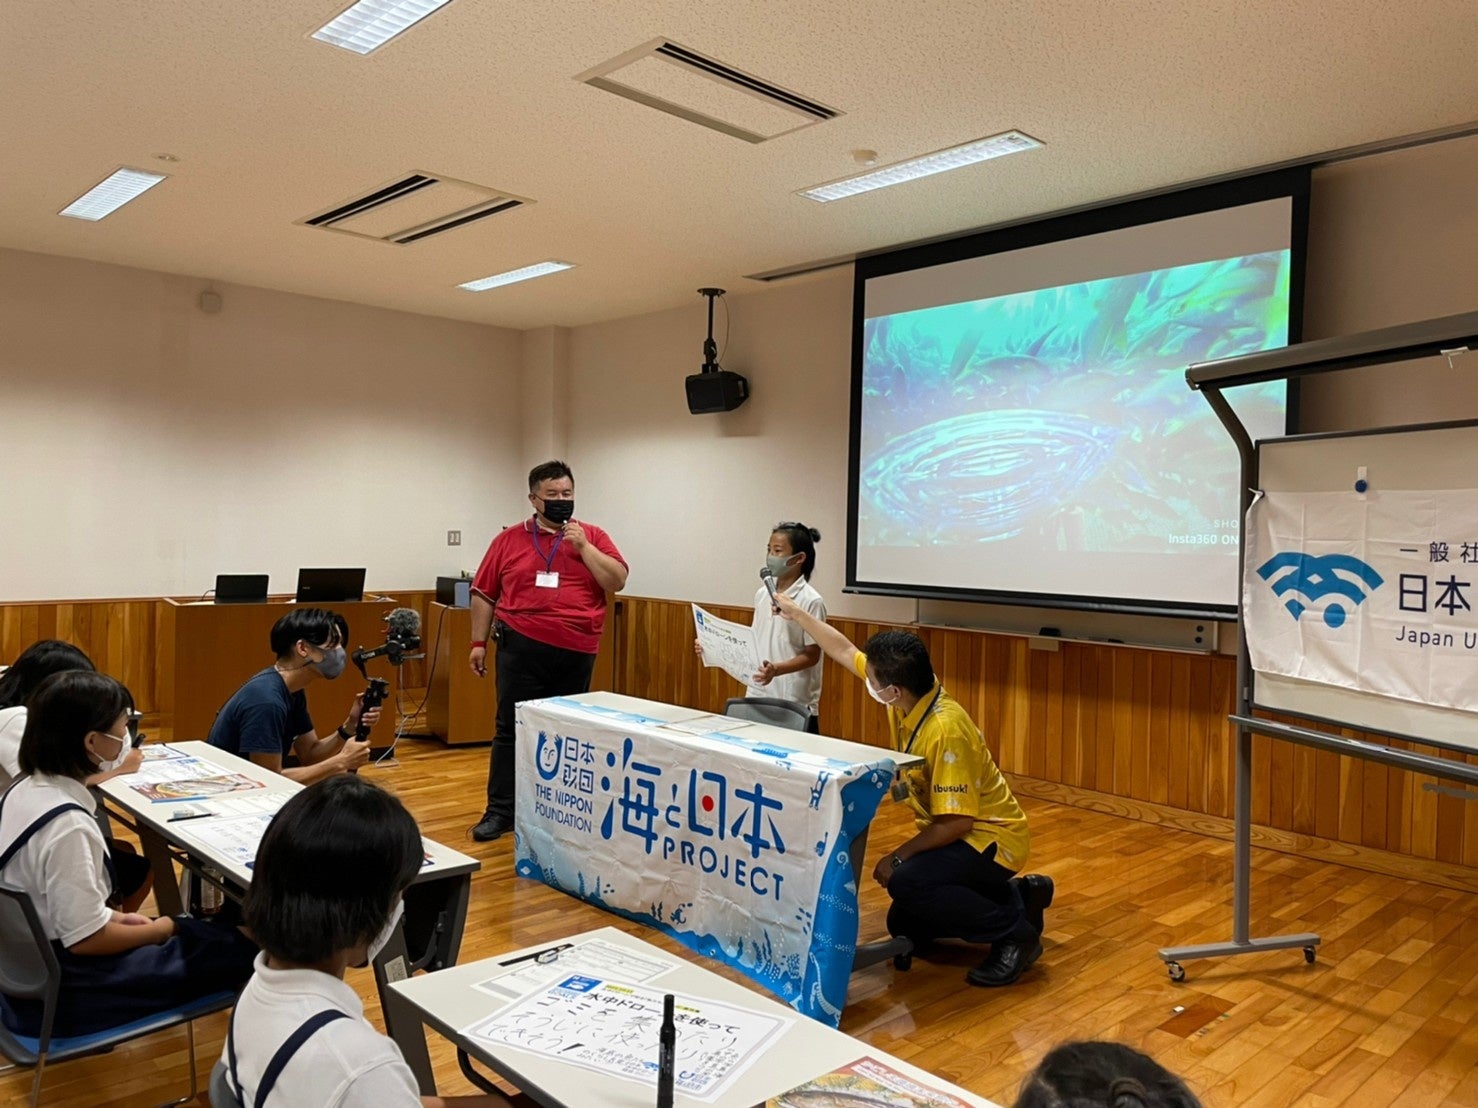 一般社団法人 日本水中ドローン協会、水中ドローン体験会×地域学習(SDGs)【水中ドローンで知る「私たちの海」】の開催を発表。2022年は全国10ヵ所でのサブ画像6_2021年鹿児島開催の様子